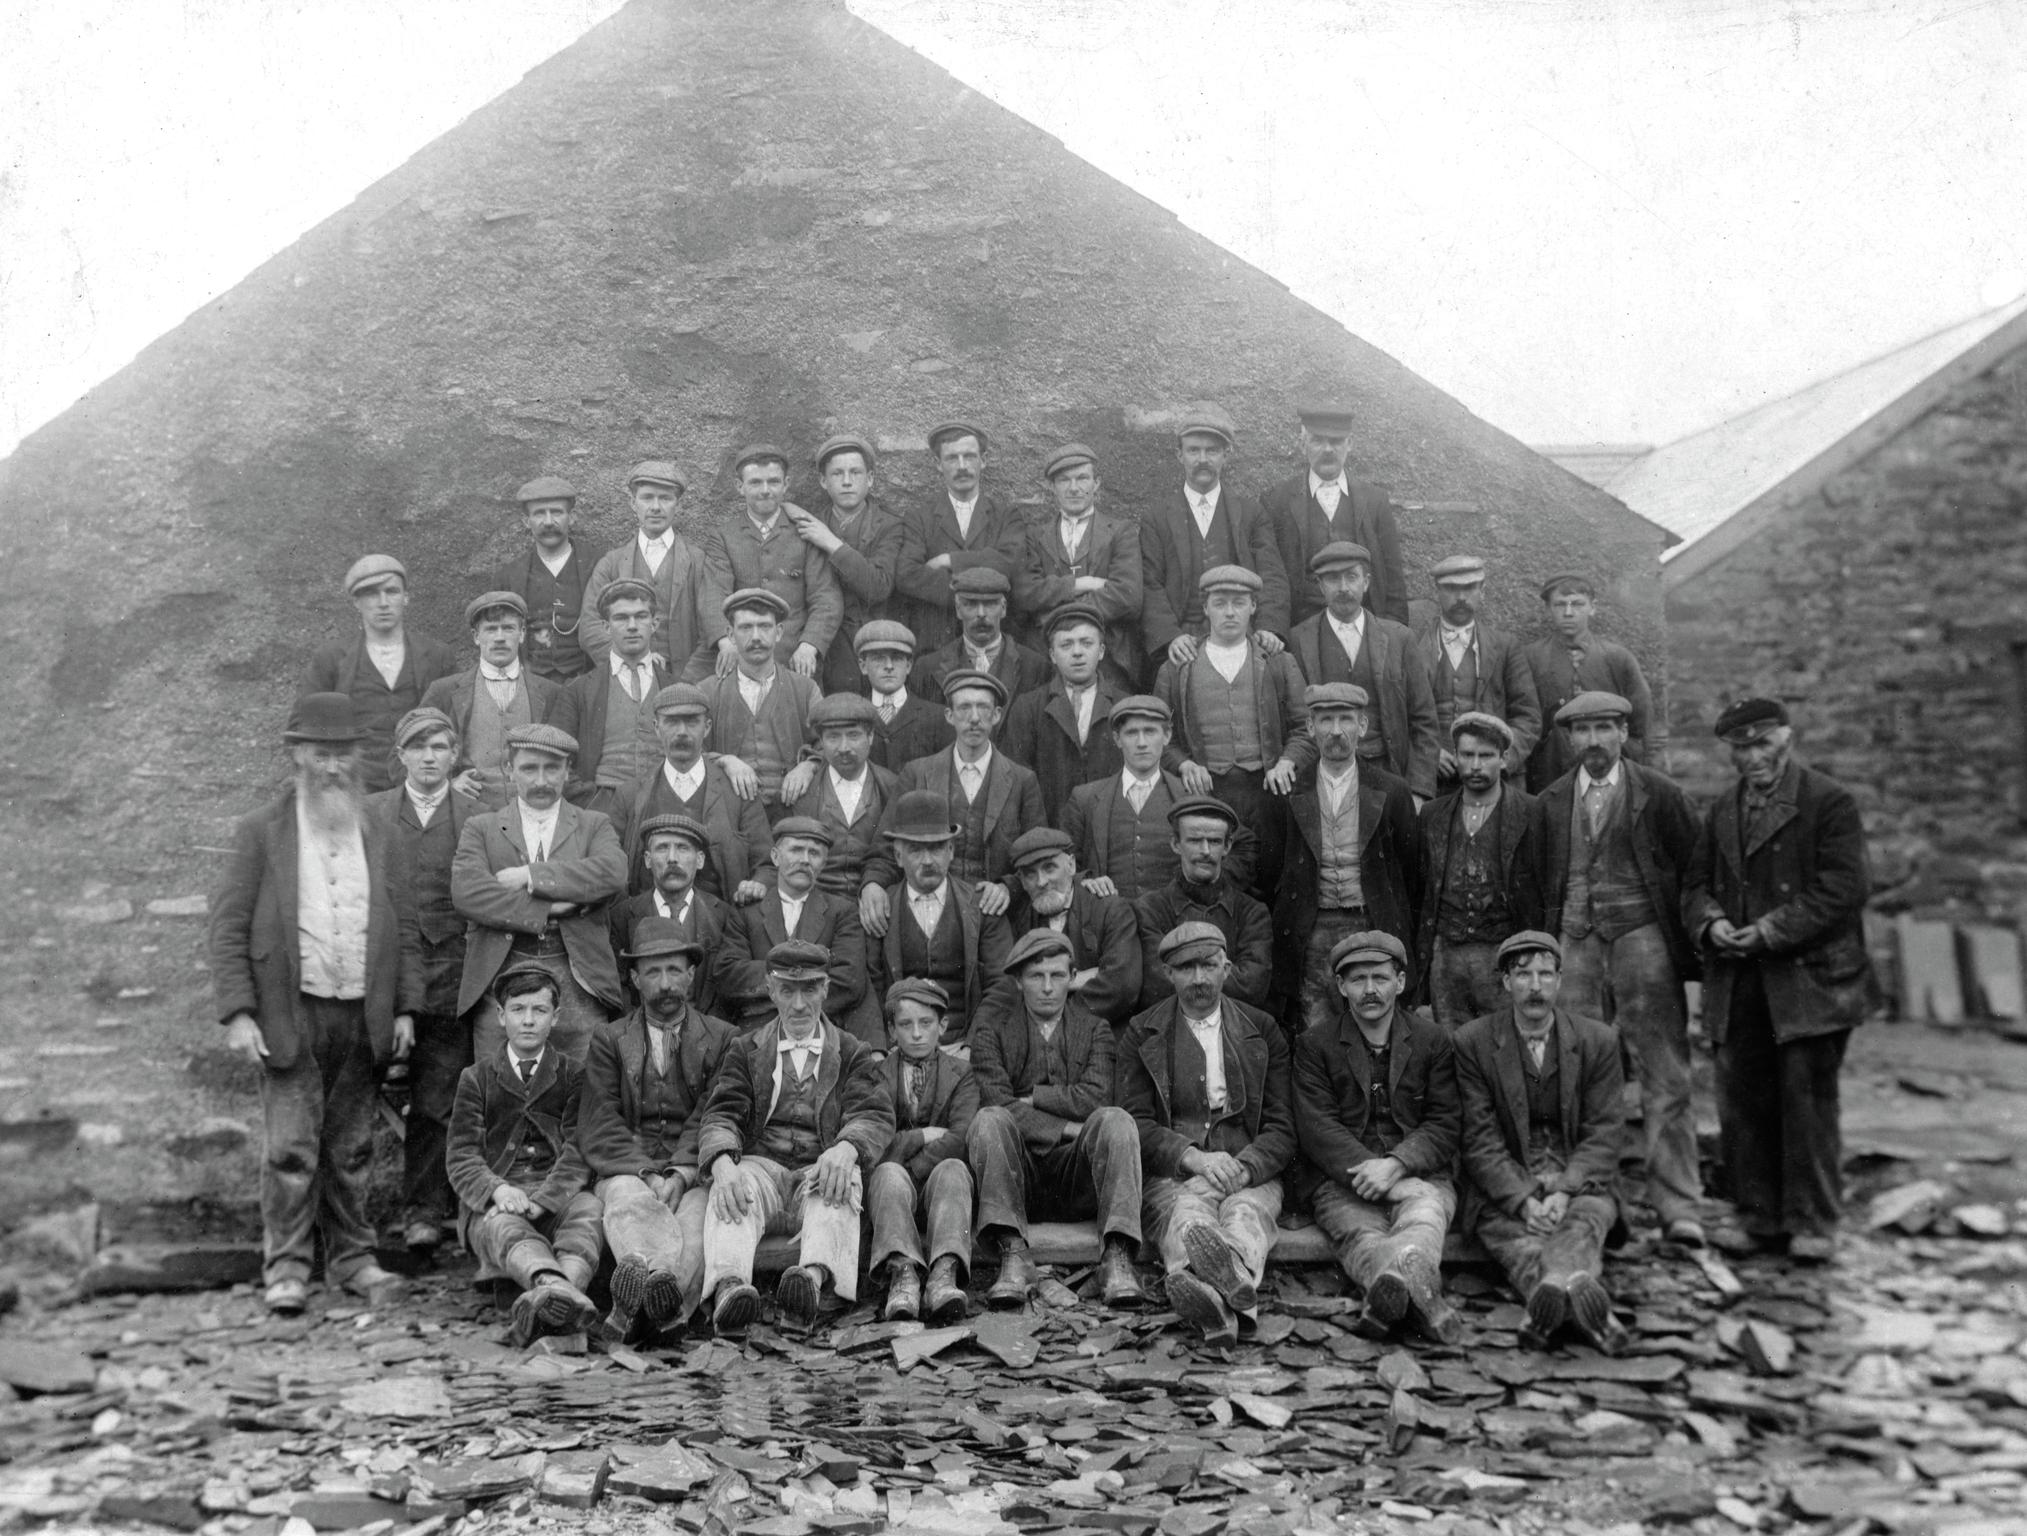 Slate quarry workmen, photograph